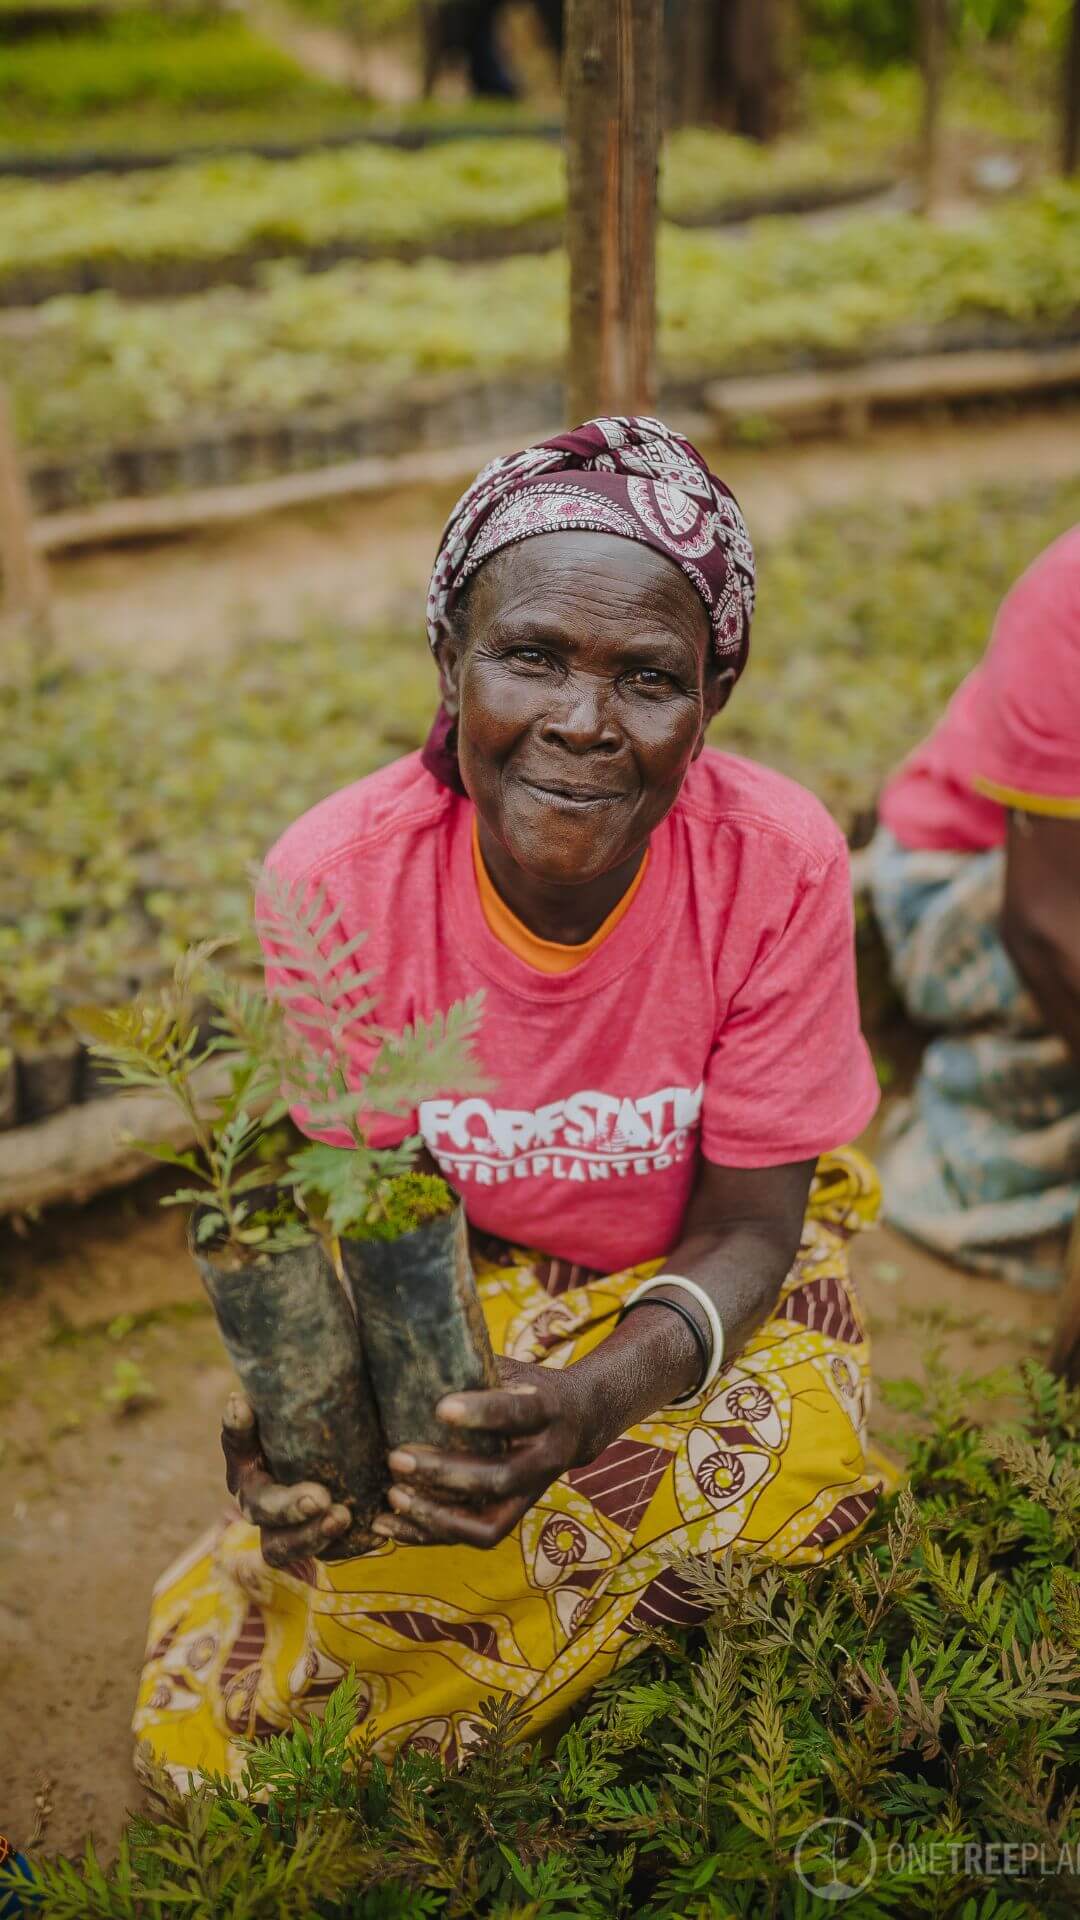 Femme plantant un arbre